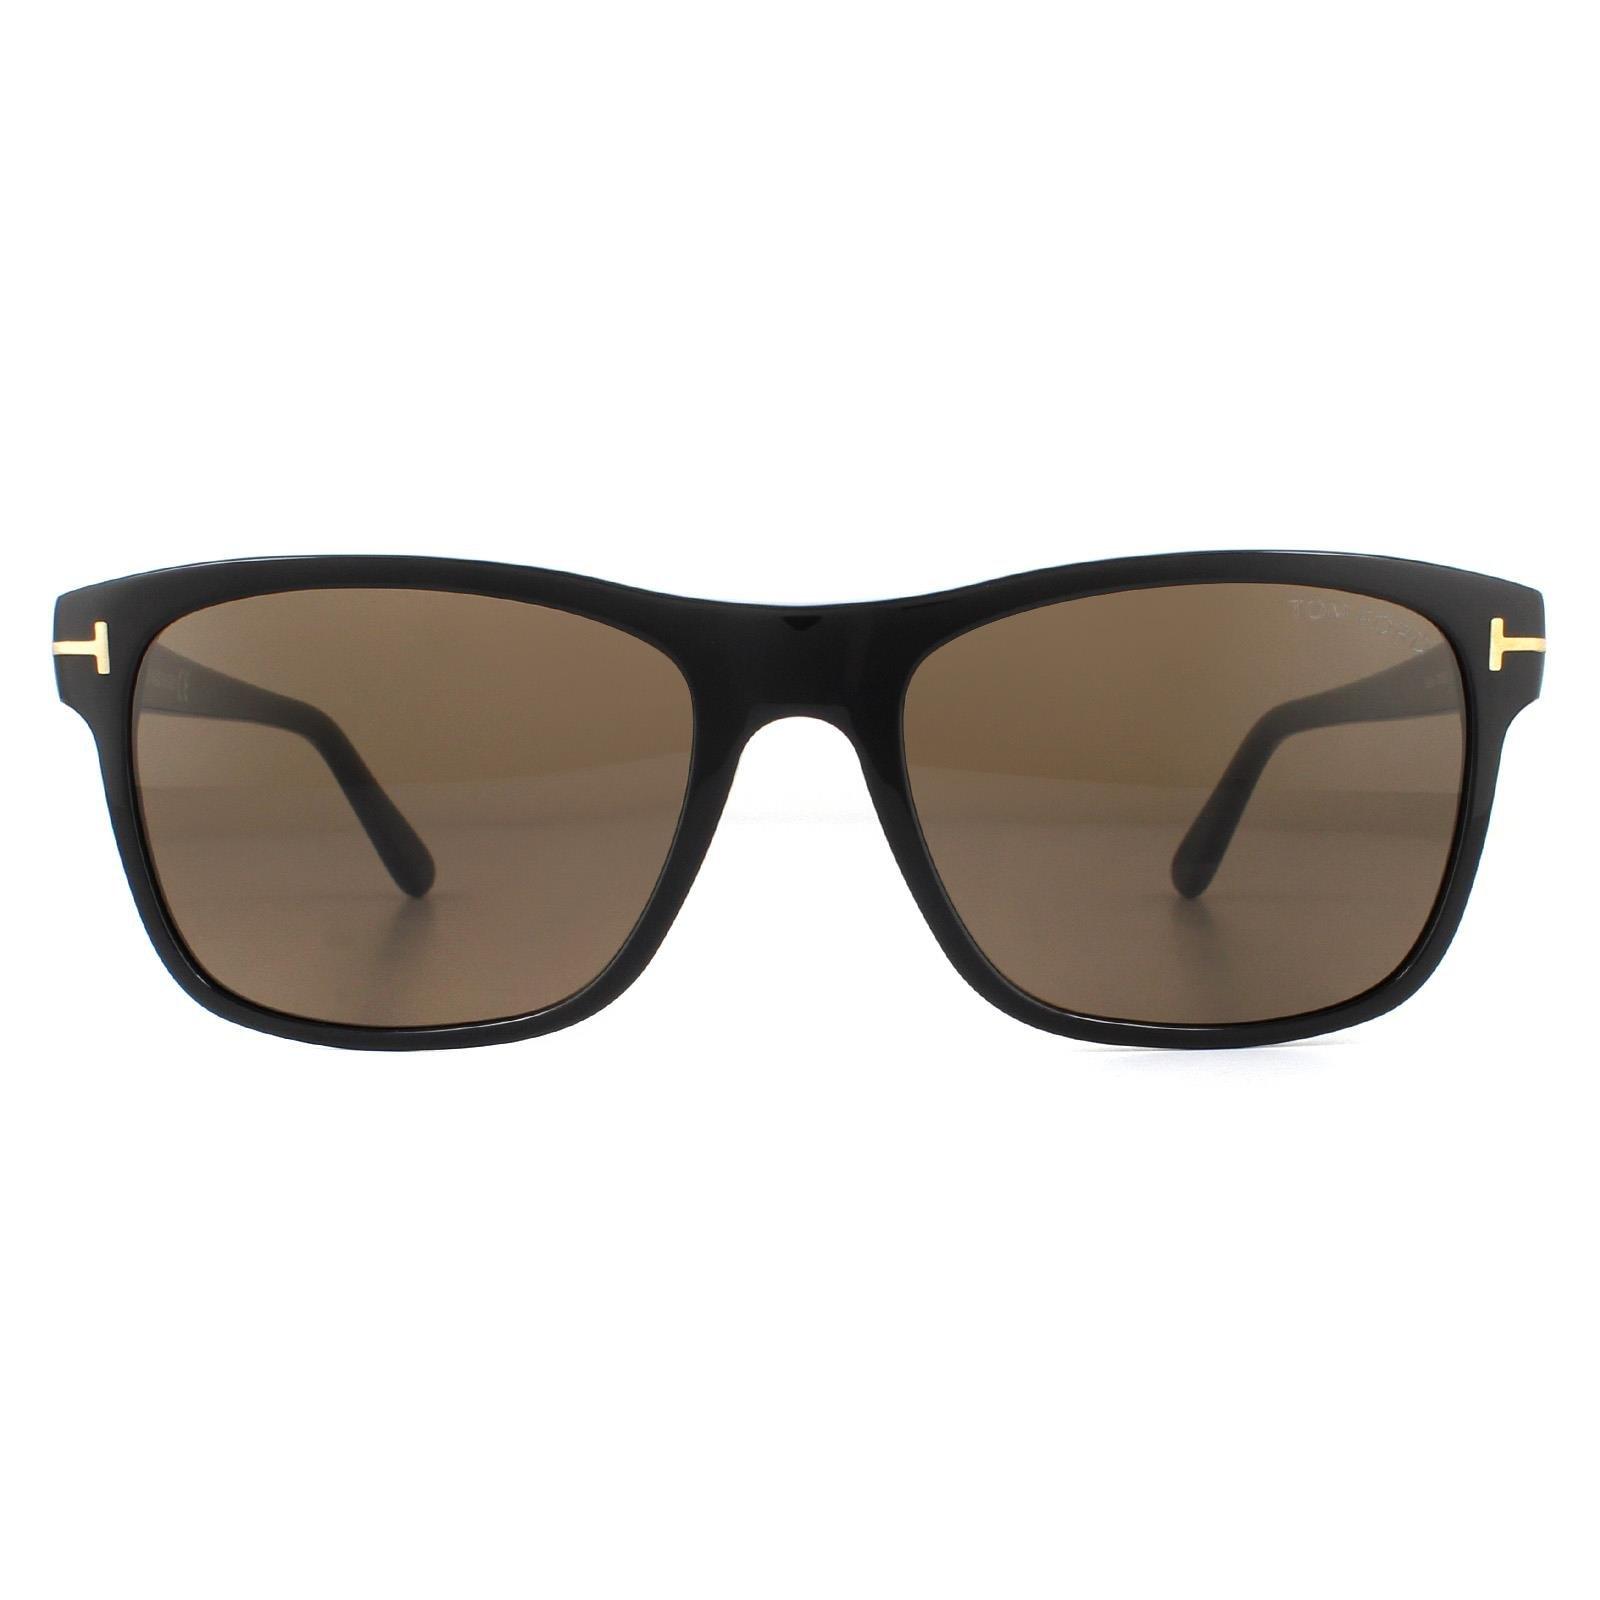 Прямоугольные блестящие черные солнцезащитные очки Roviex Tom Ford, черный